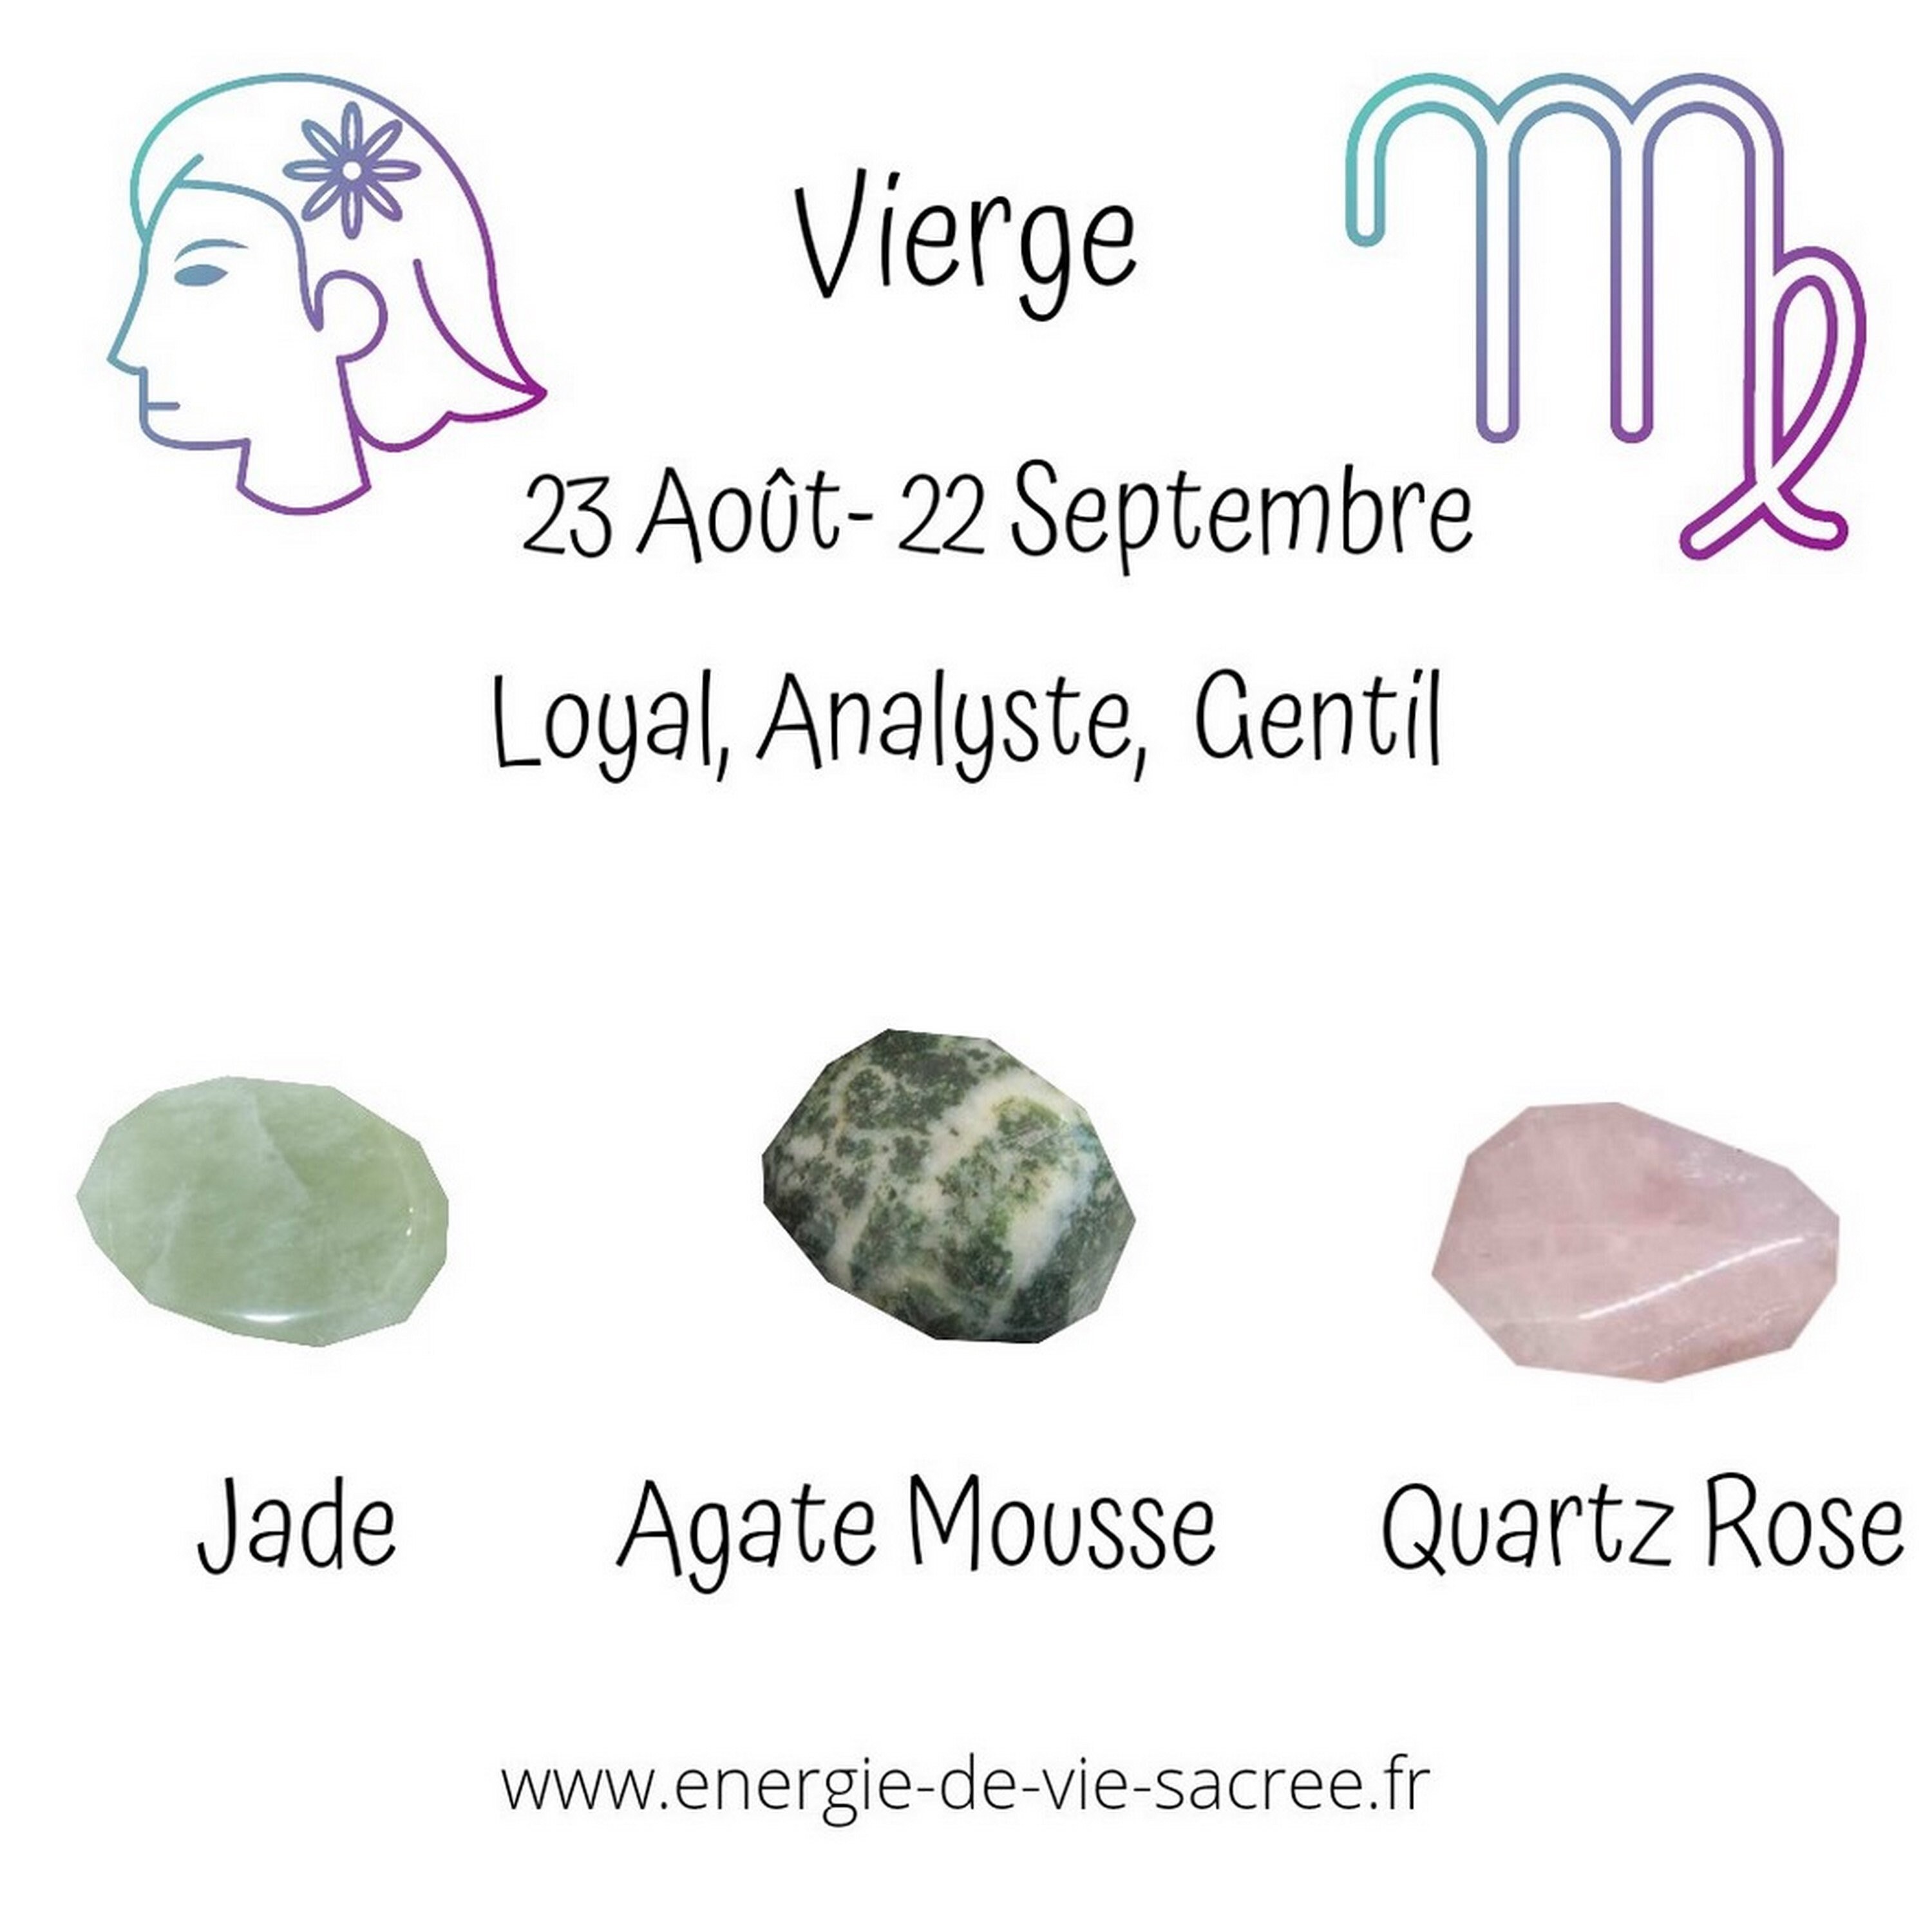 Pierres Pour Les Vierges, Ensemble de Pierre, Agate Mousse, Jade, Quartz Rose, Pierres Roulées